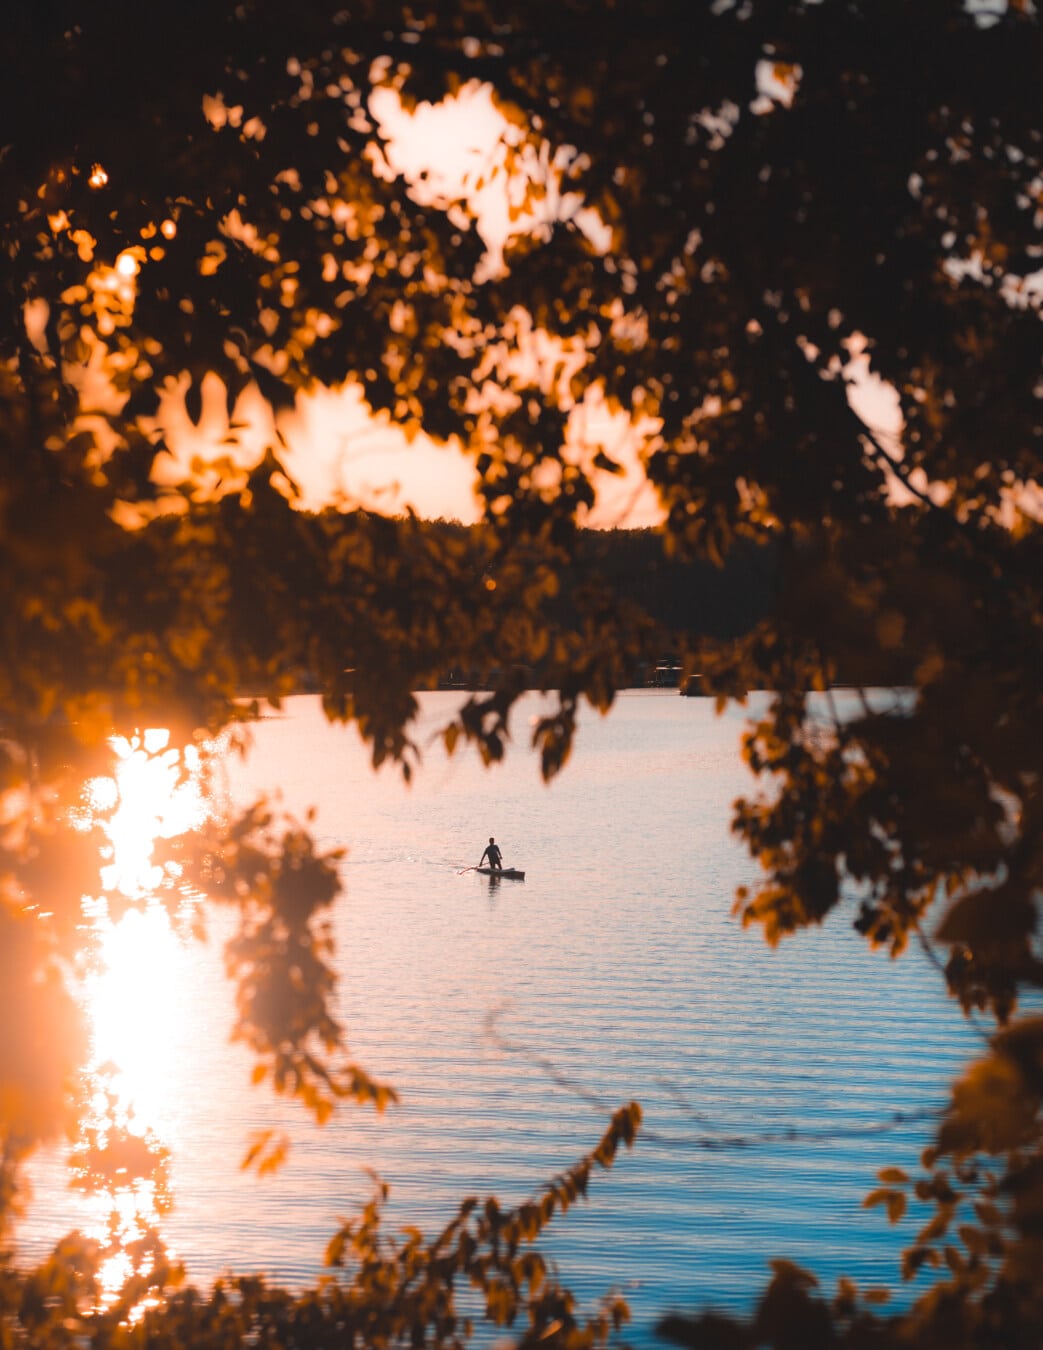 sunset, autumn season, silhouette, sunlight, kayak, person, sun, water, dawn, nature